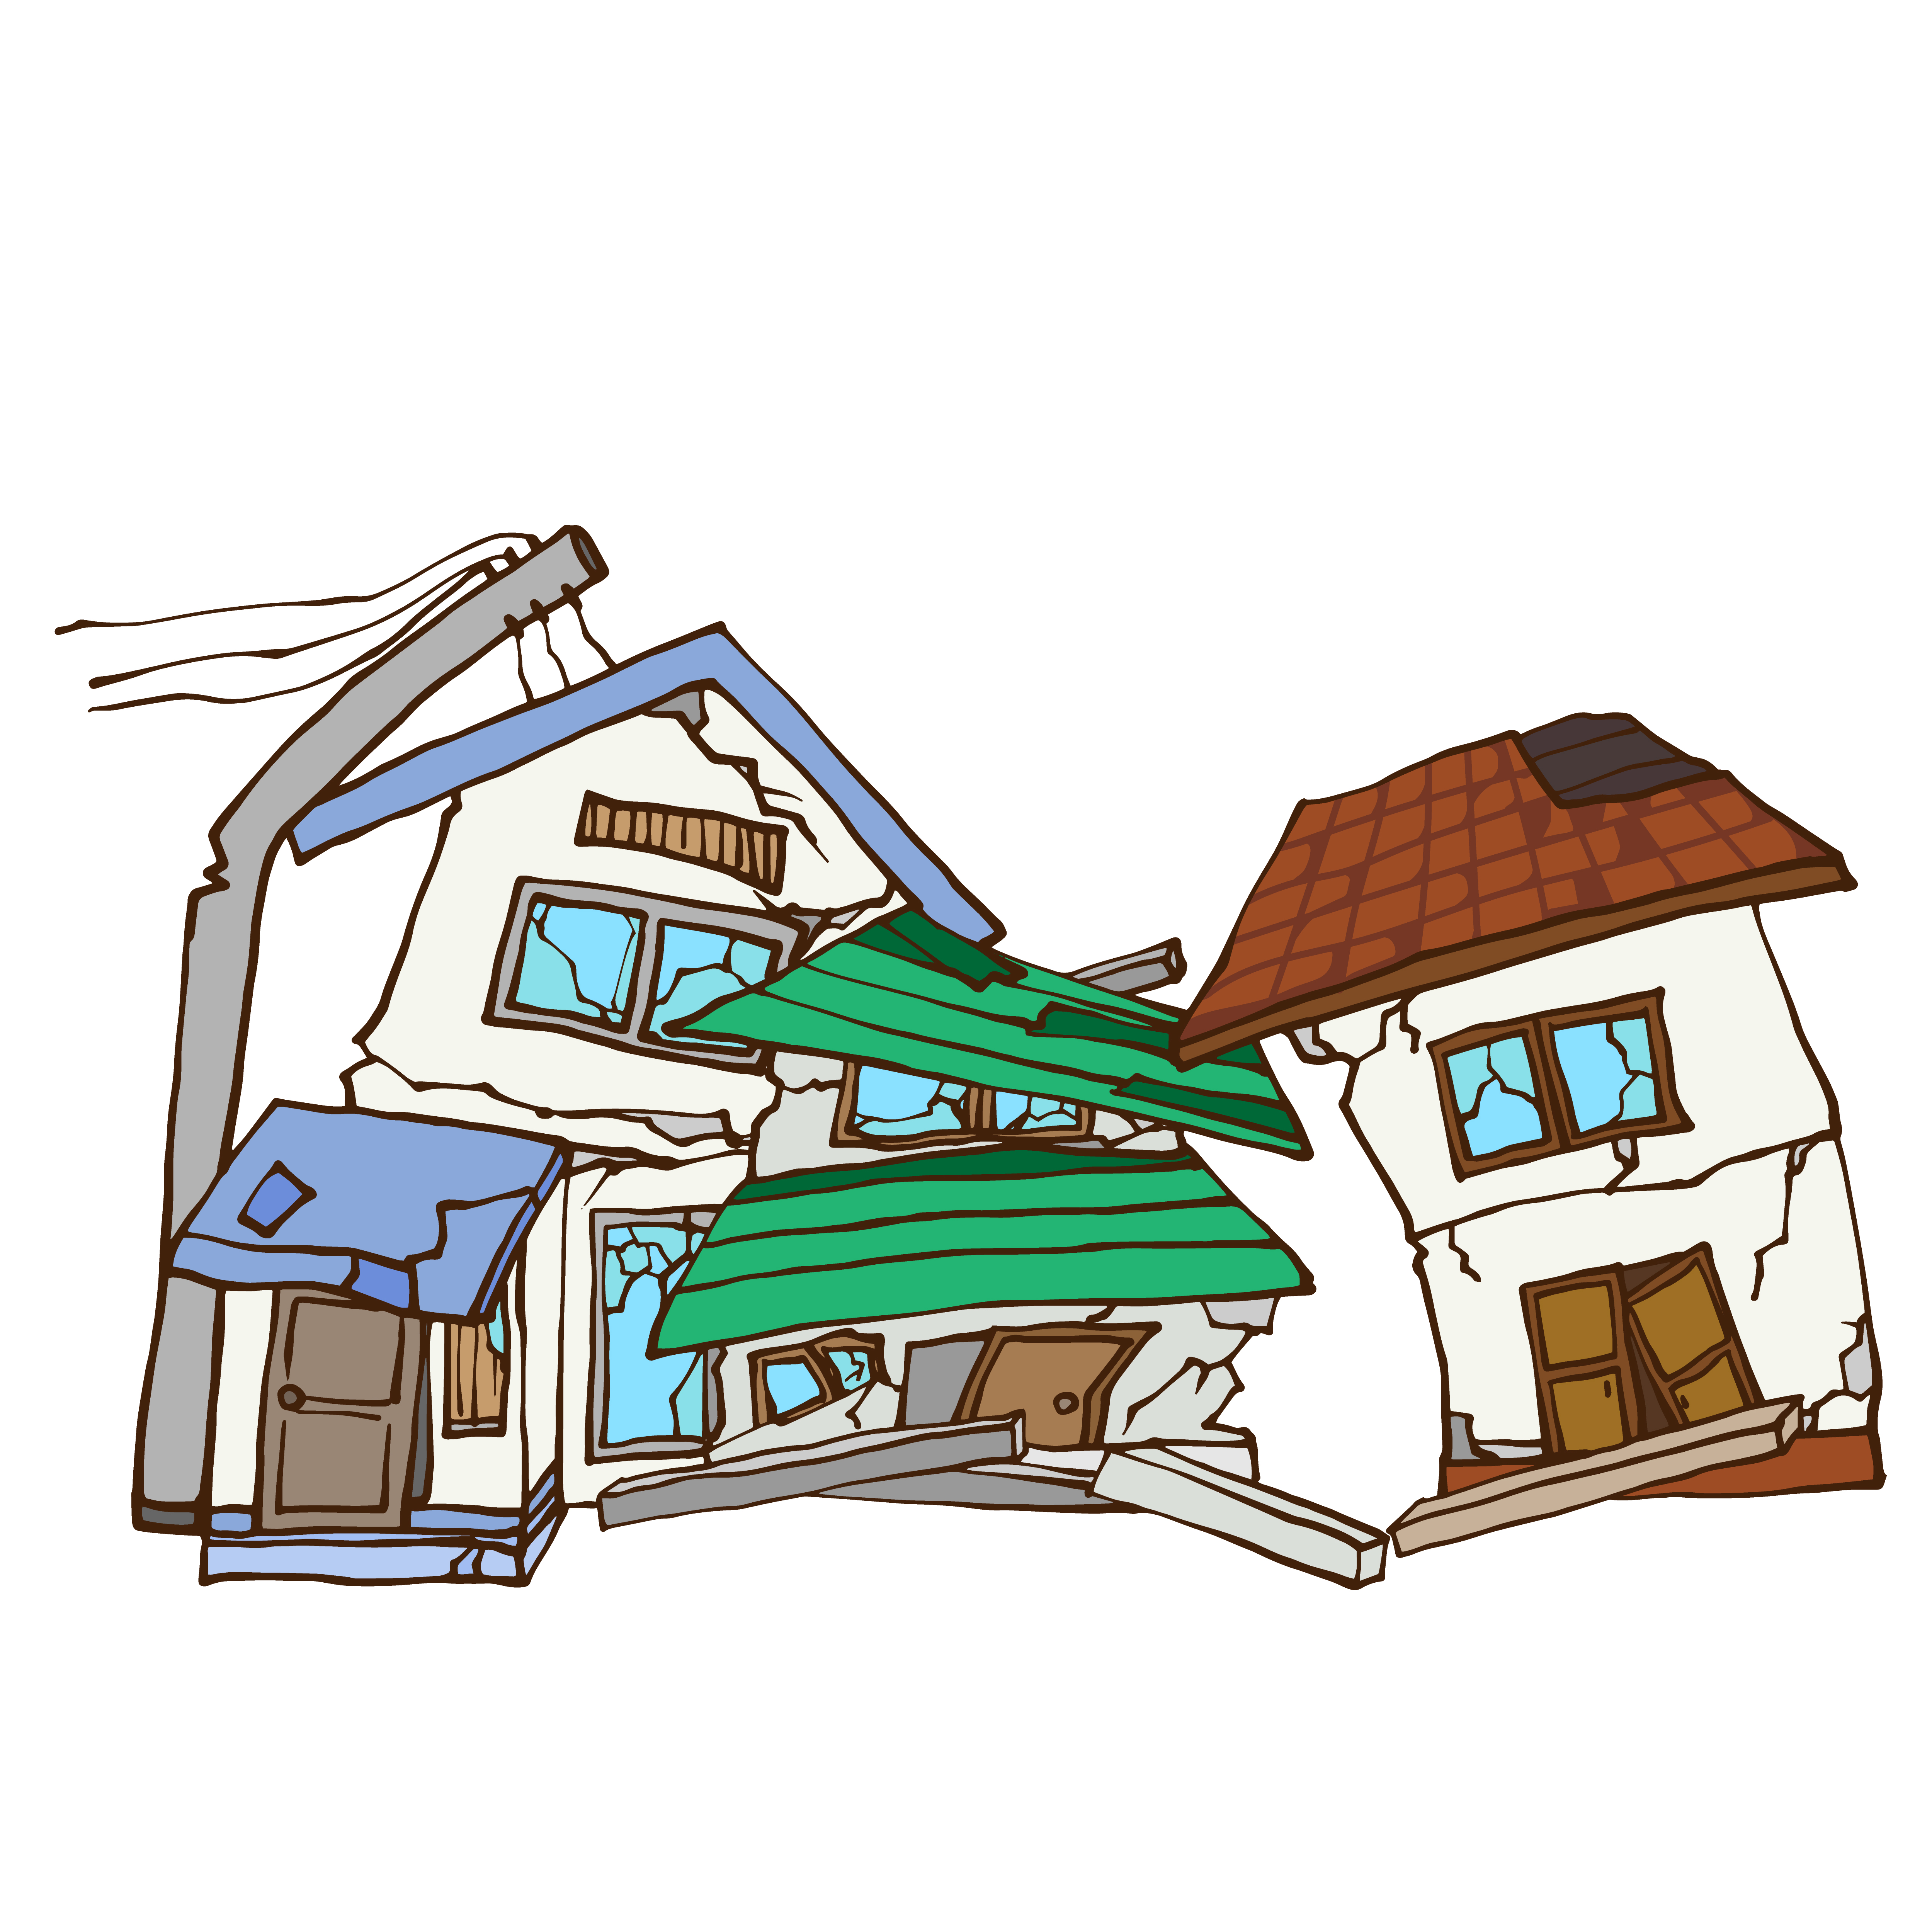 地震対策は万全に 注文住宅を奈良県でお探しならランドマーク建築事務所にお任せ下さい